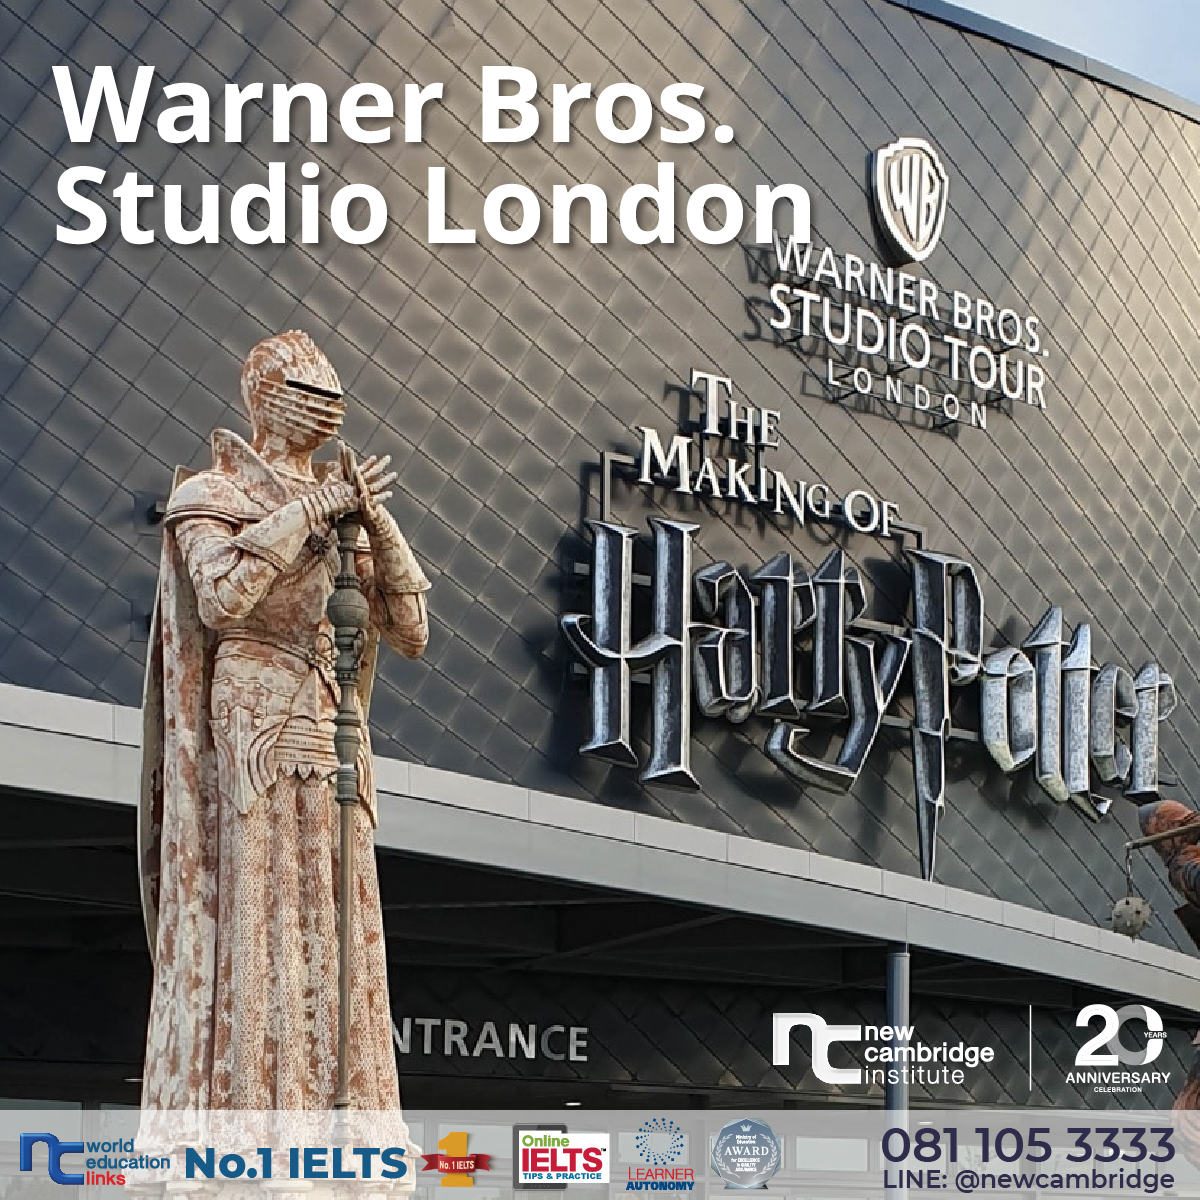 The Warner Bros. Studio